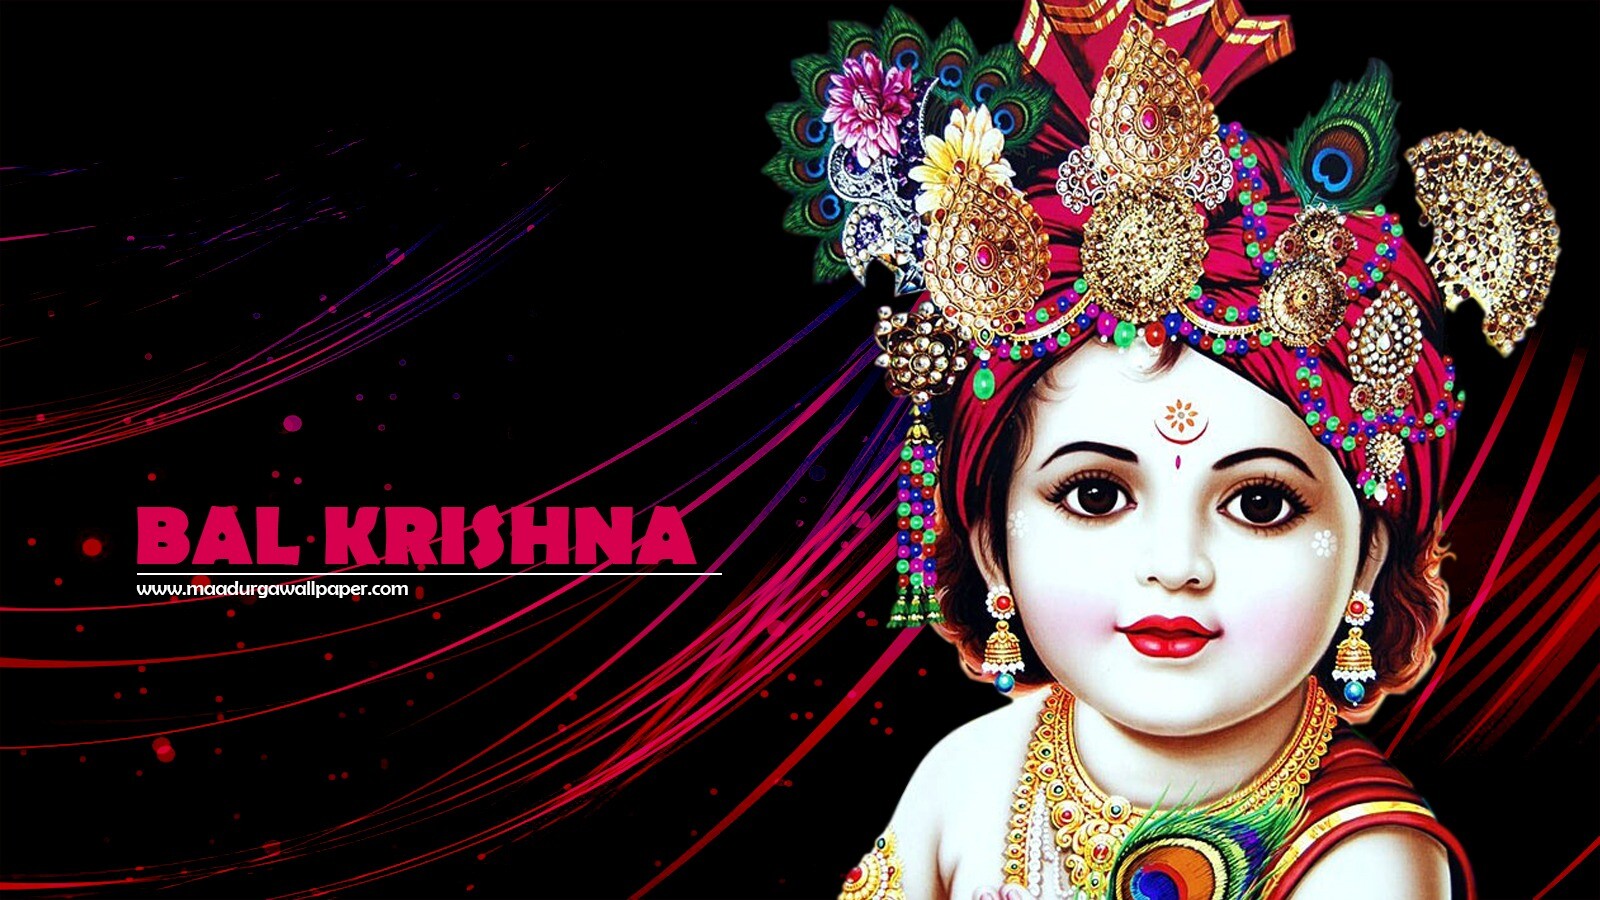 ArtStation - Love for Krishna